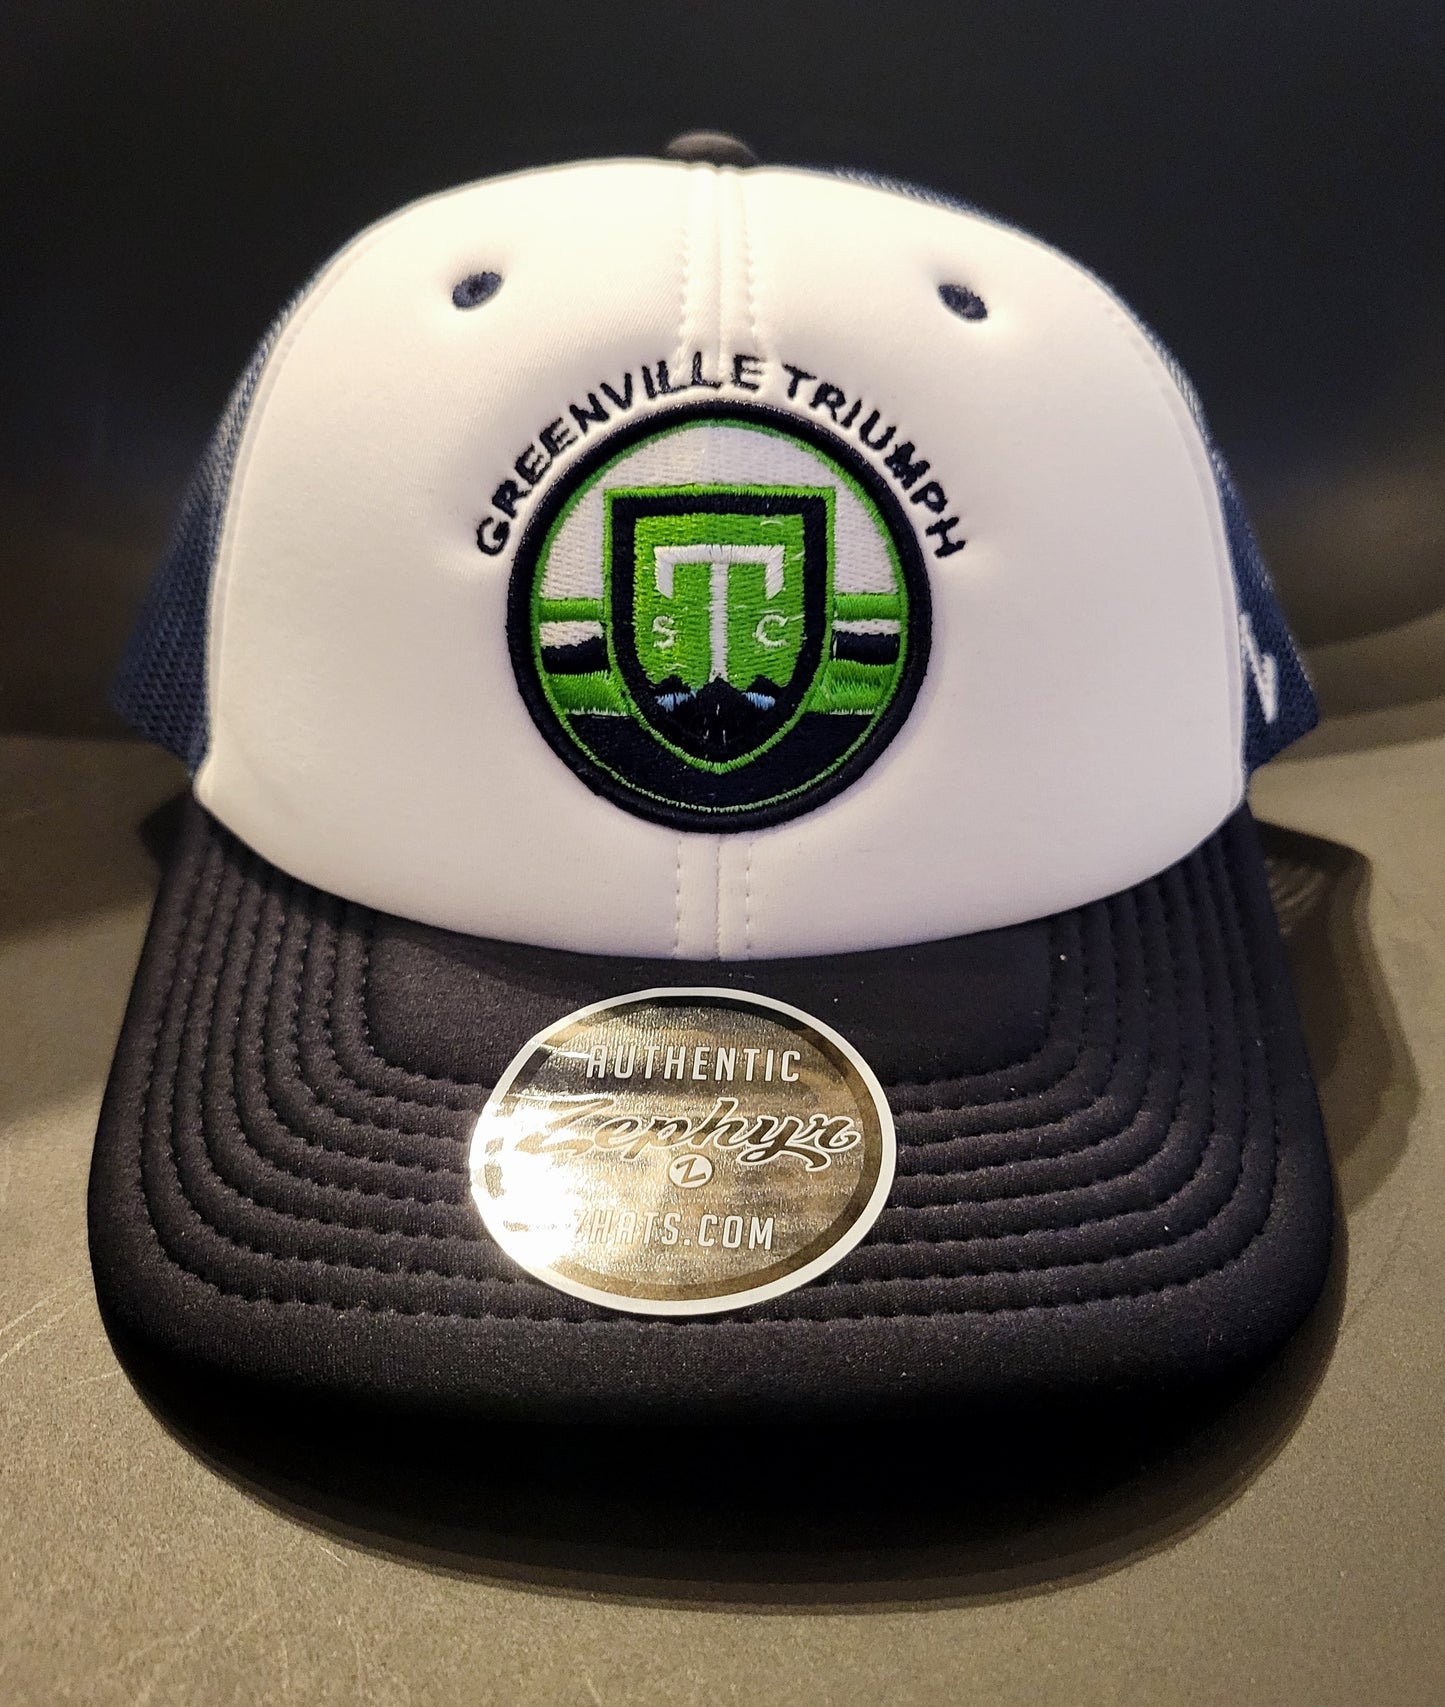 Voorrecht kin Bedrijfsomschrijving Zephyr Greenville Triumph Fan Focus Trucker Hat – Greenville Triumph SC